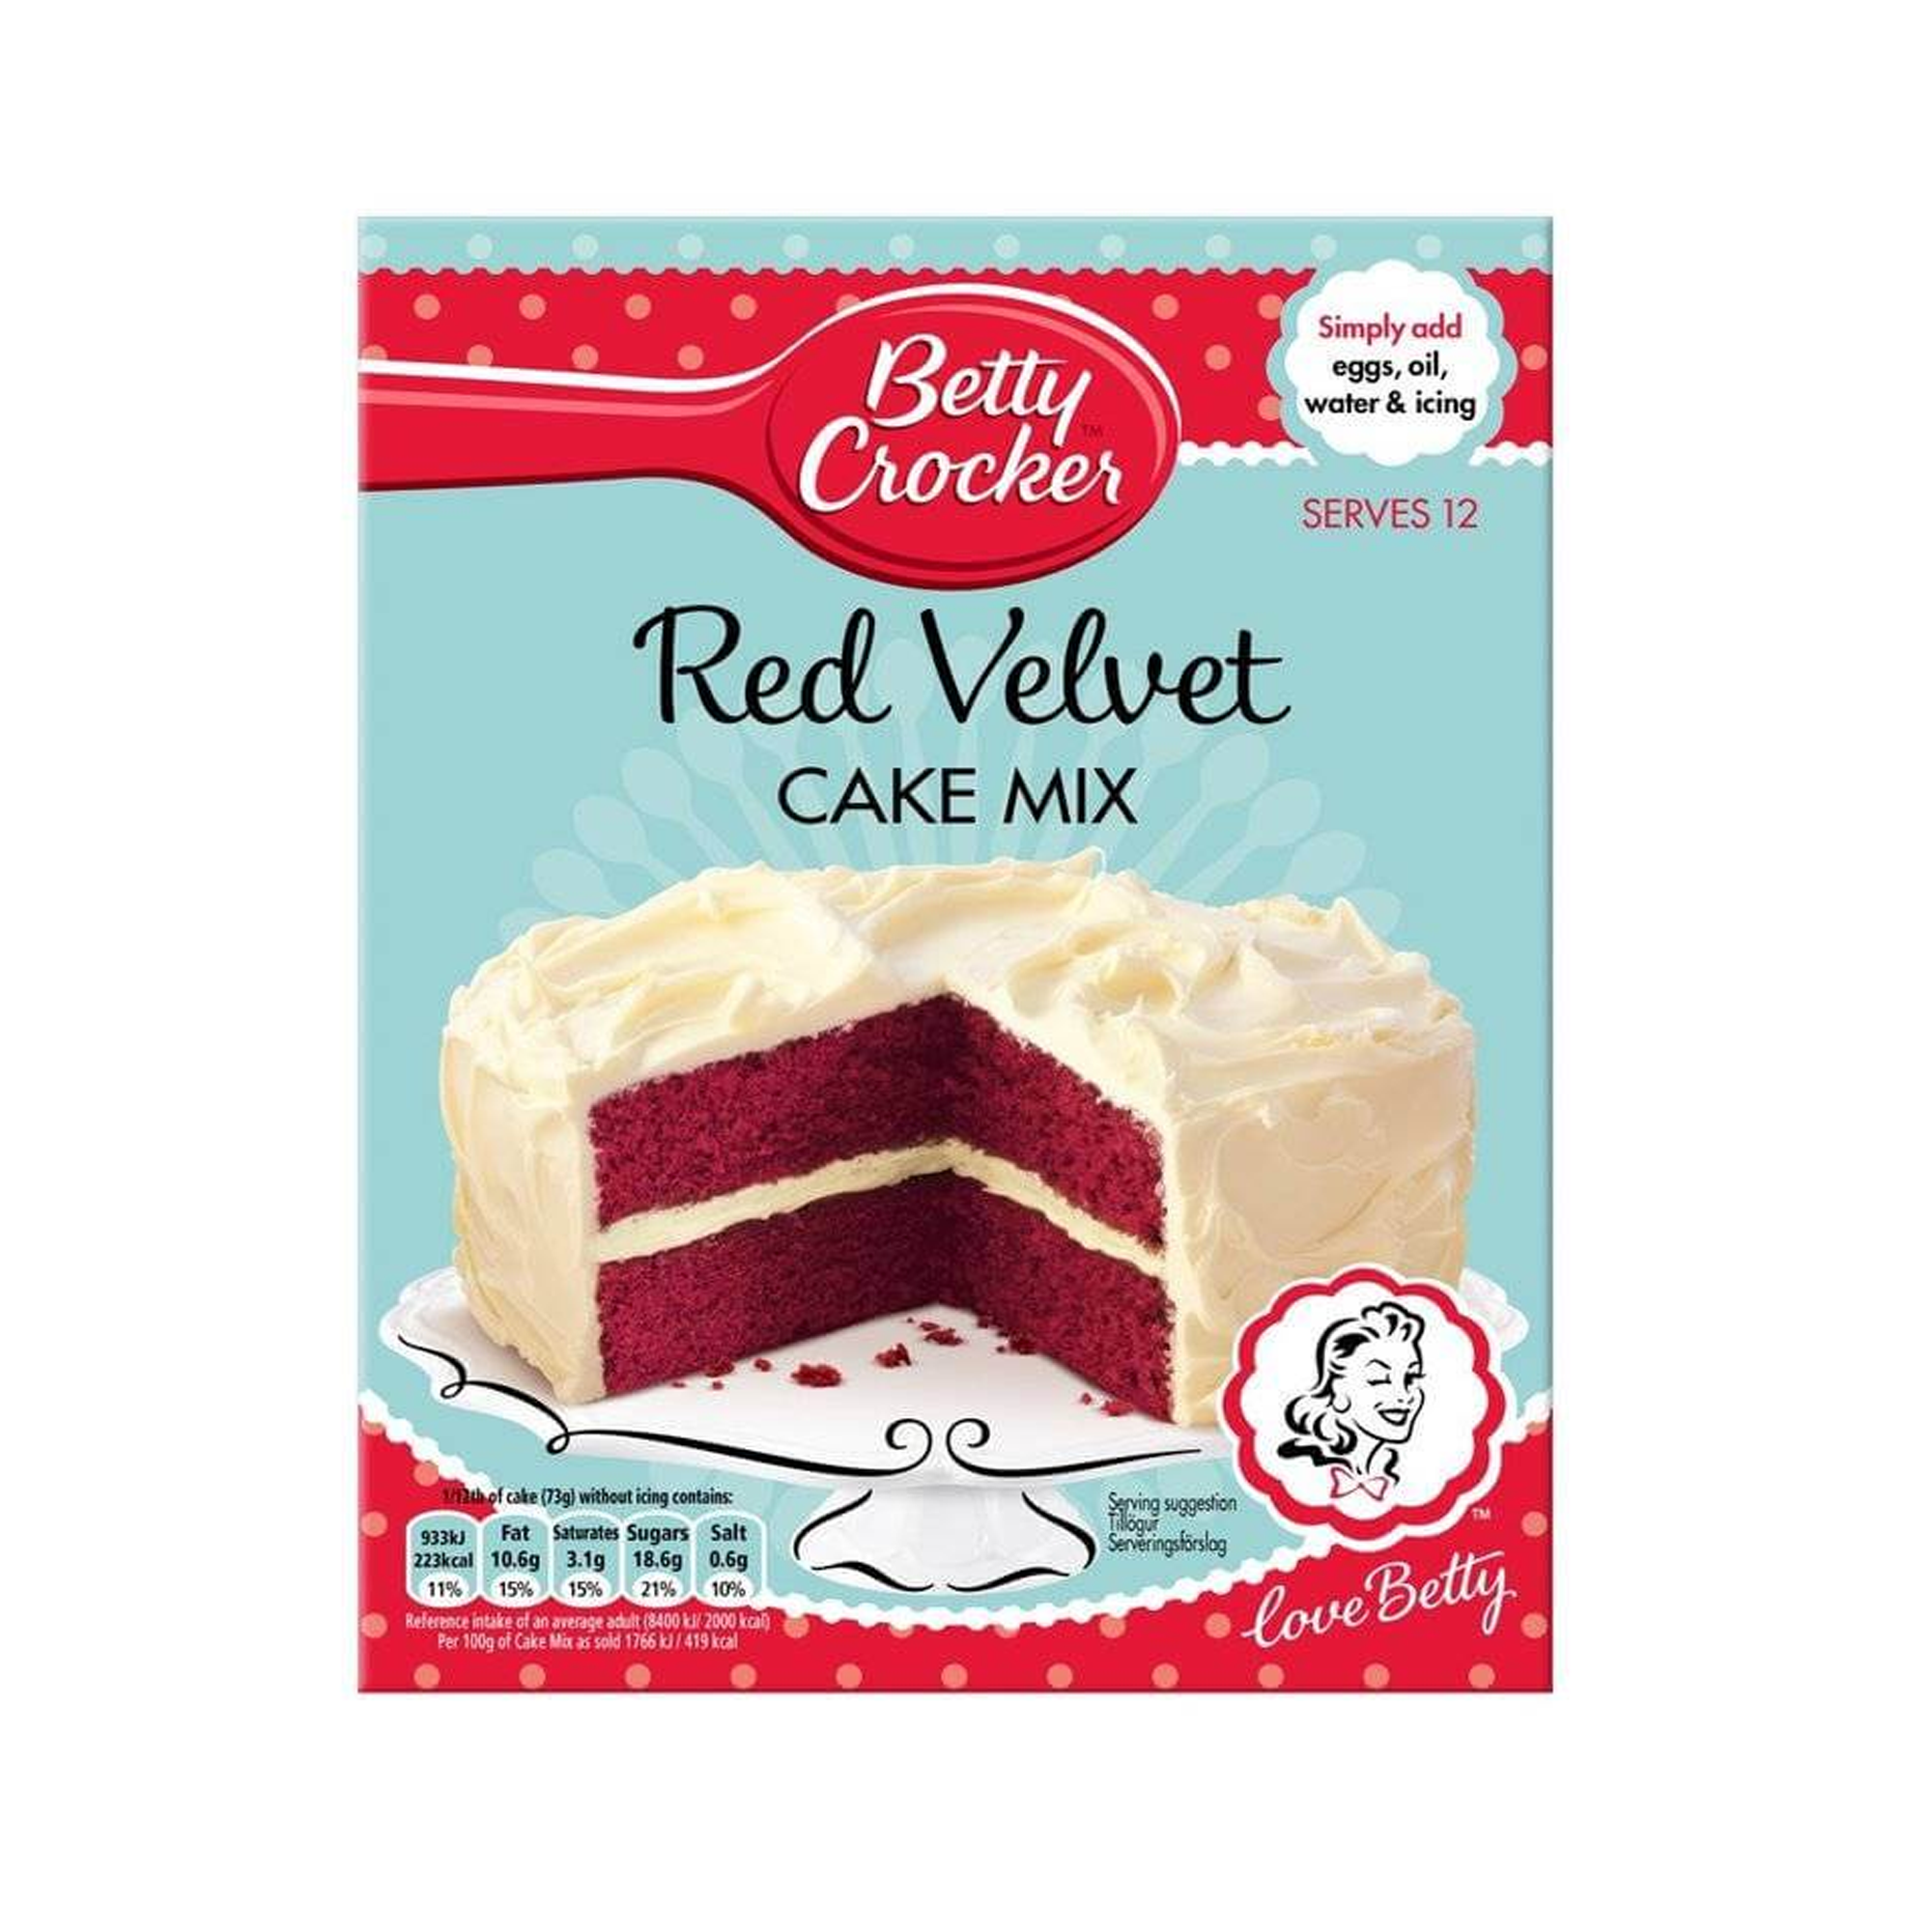 Test Kitchen: Which Cake mix is Best? - Baking with Blondie